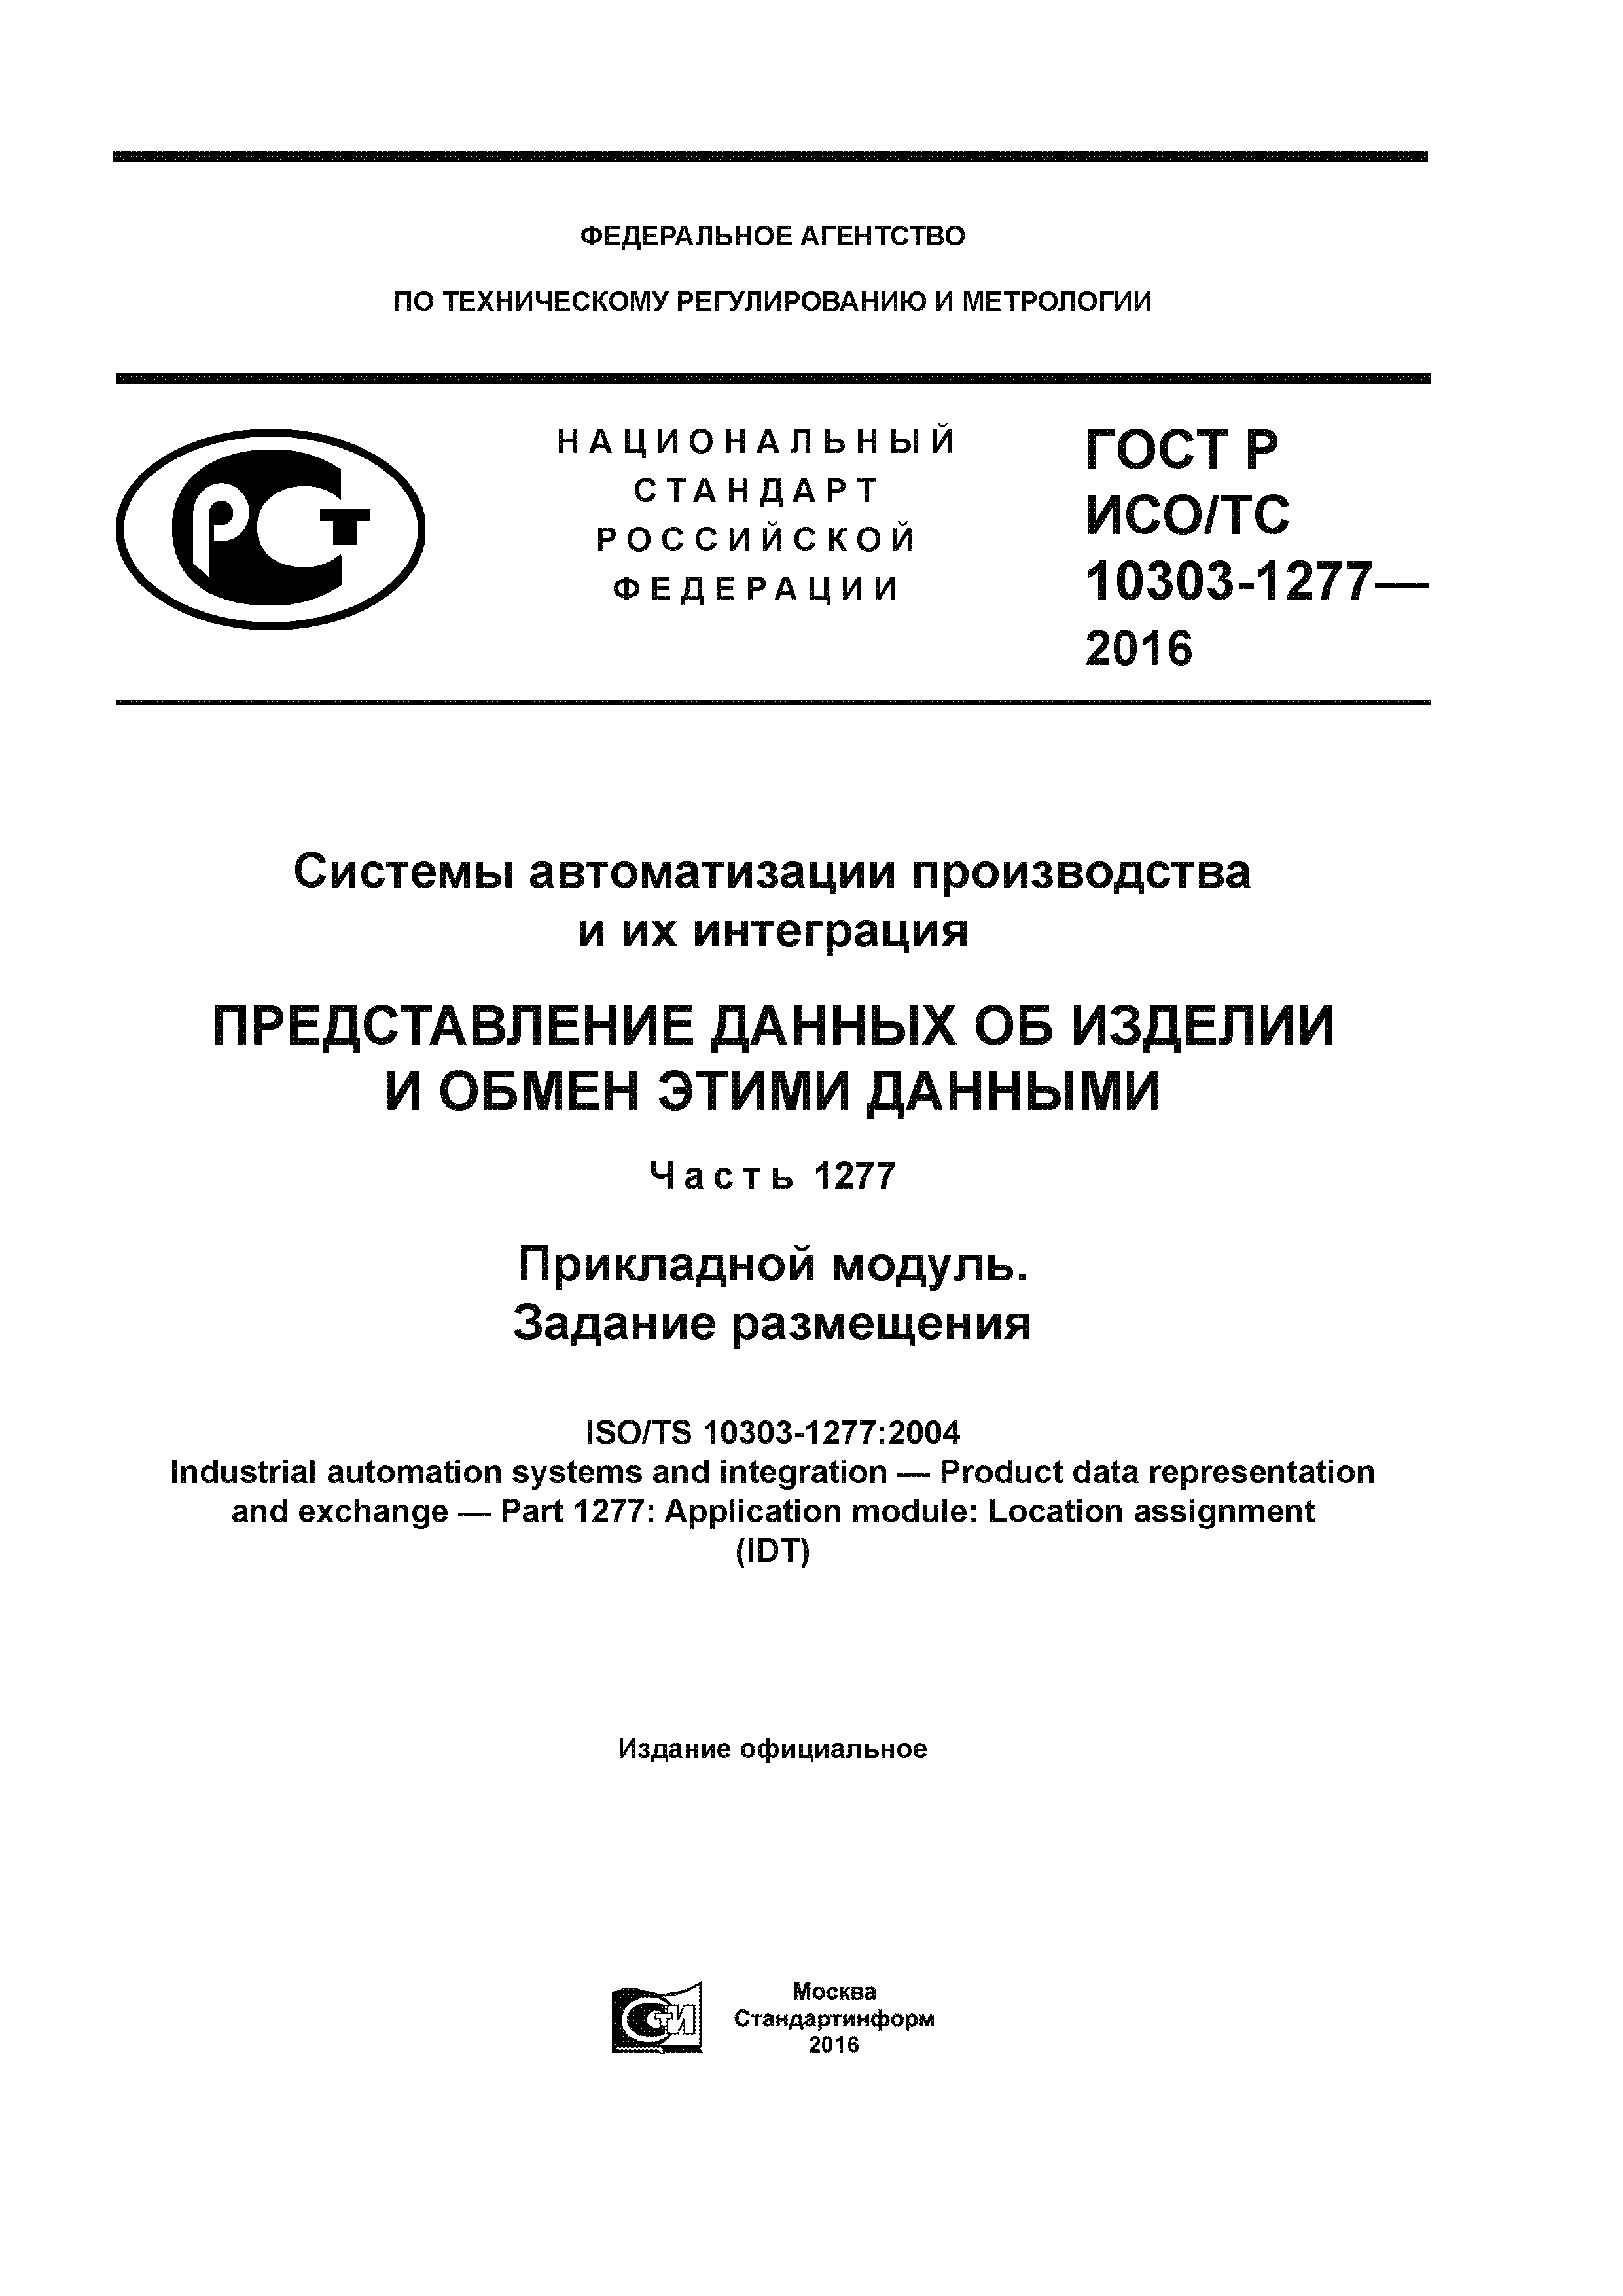 ГОСТ Р ИСО/ТС 10303-1277-2016